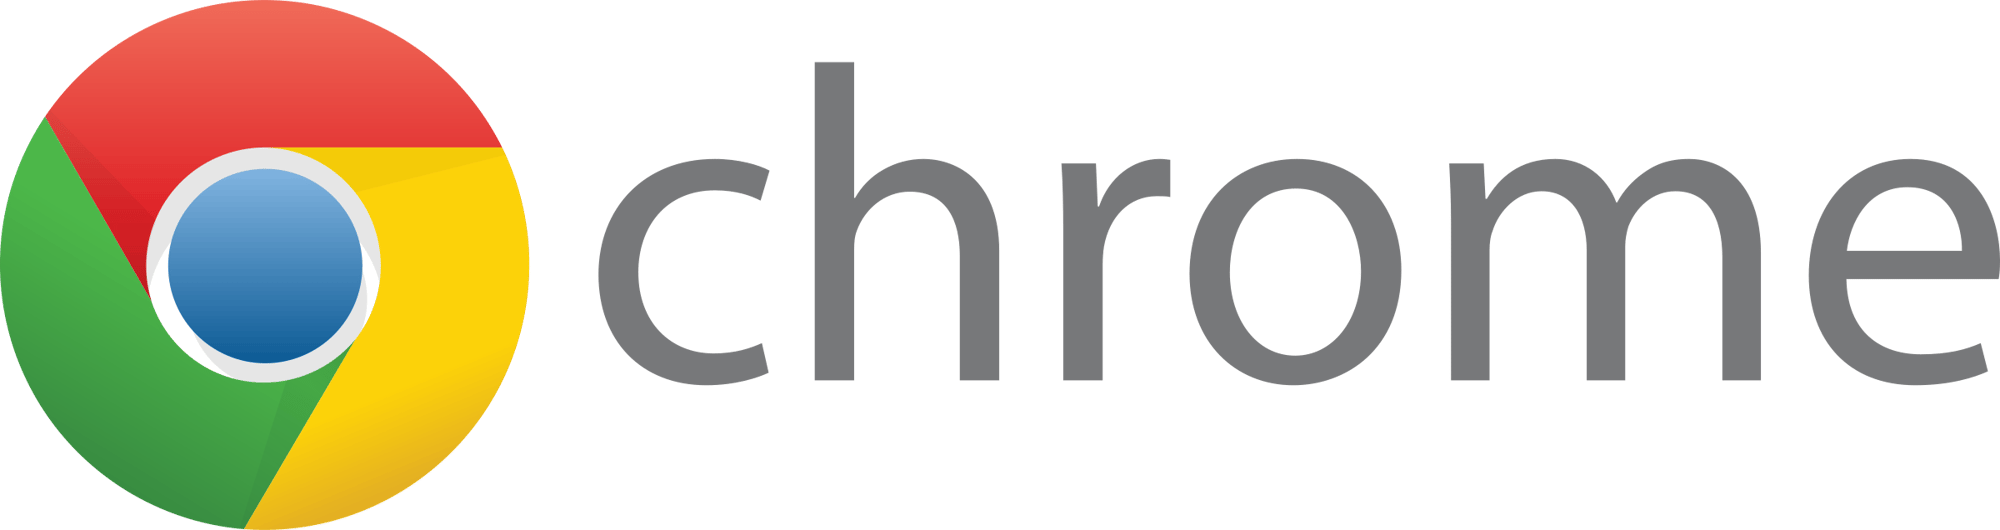 google-chrome-1-logo-png-transparent